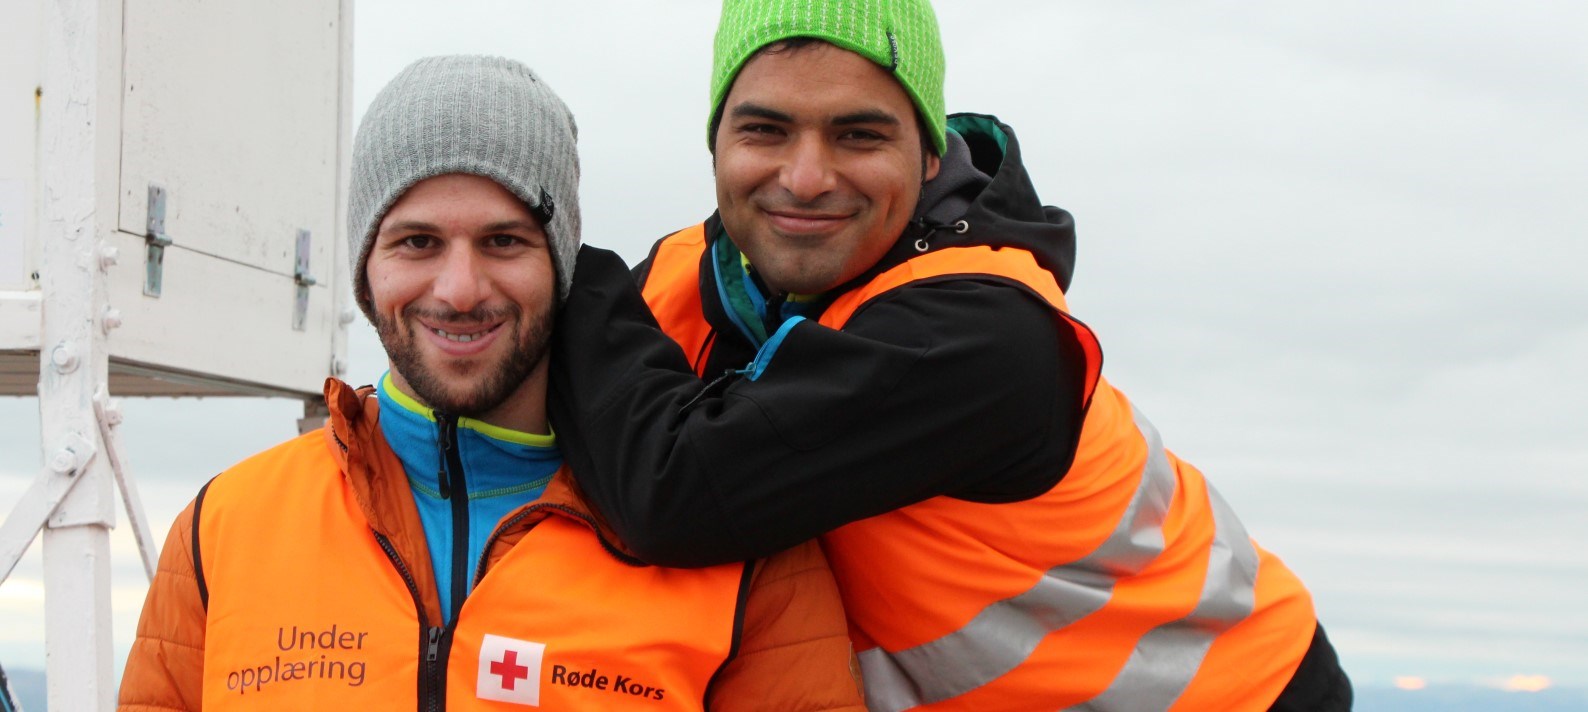 PÅ NORSKTOPPEN: Habib og Amir stilte opp som sanitetsvakter for Røde Kors i forbindelse med årets nattevandring til Gaustatoppen. (Foto: Morten Gustavsen)